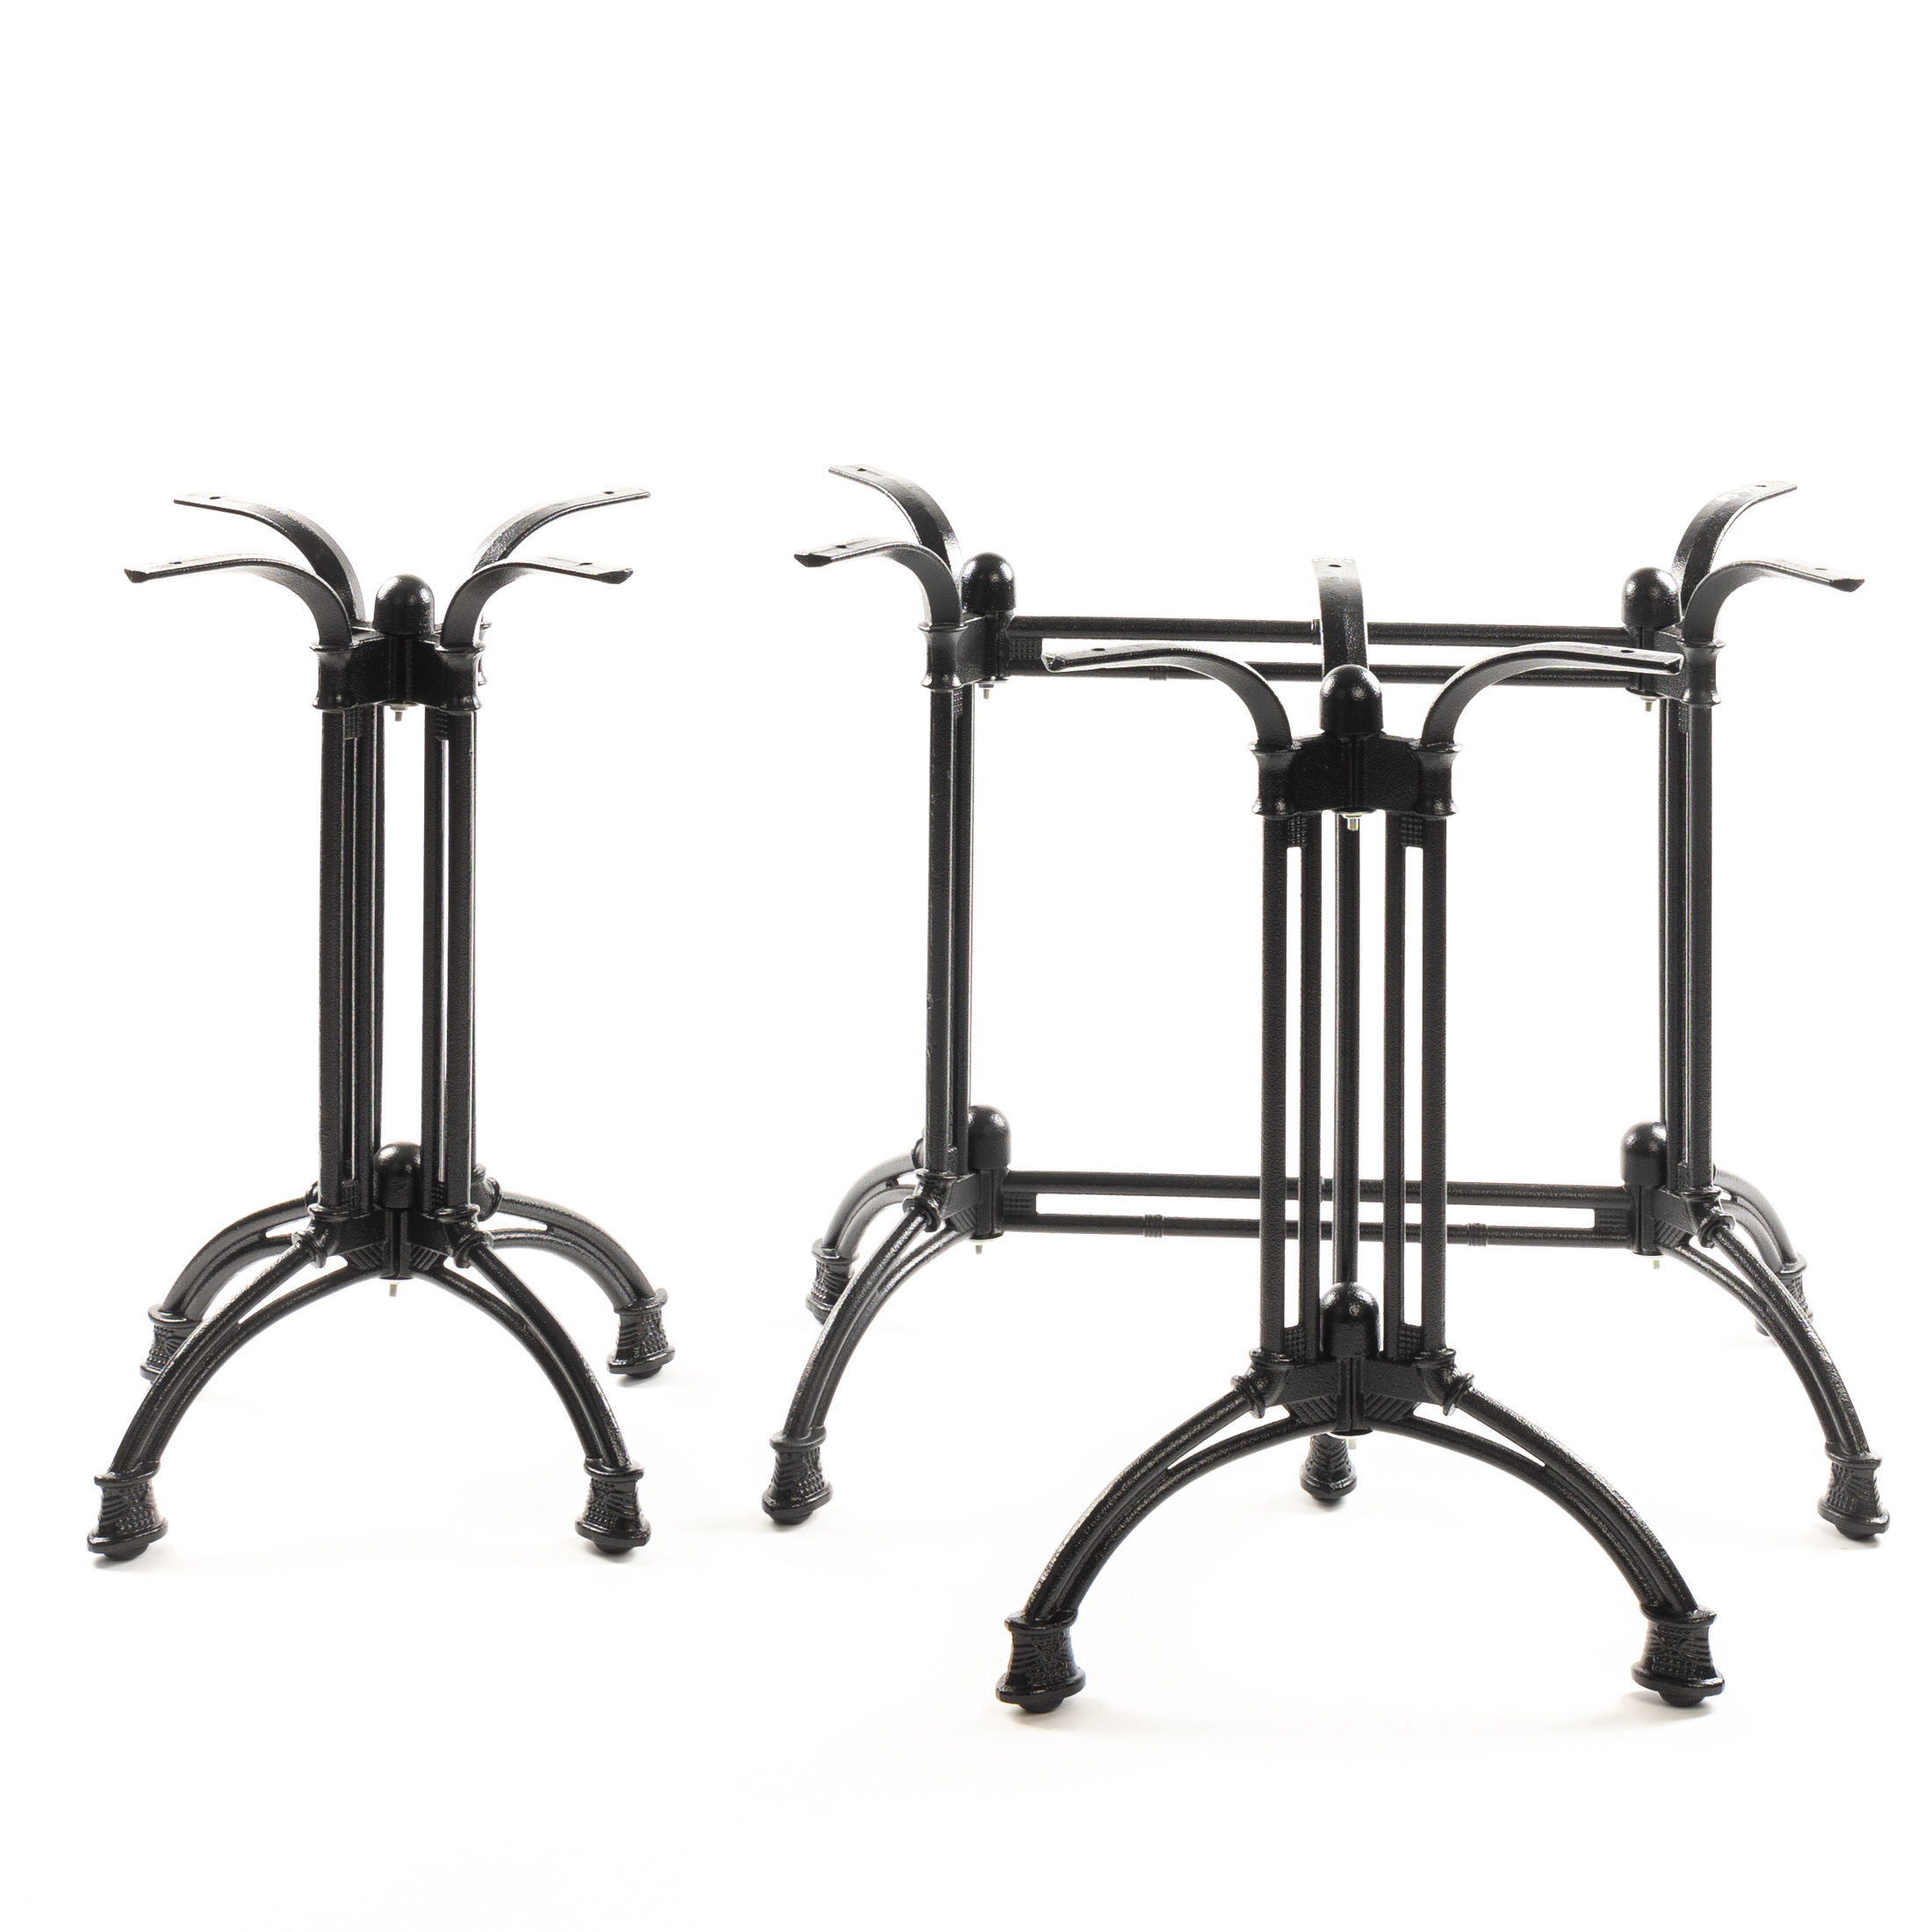 Tischgestell PJ7021, Gusseisen, Doppelsäule, schwarz, elegant